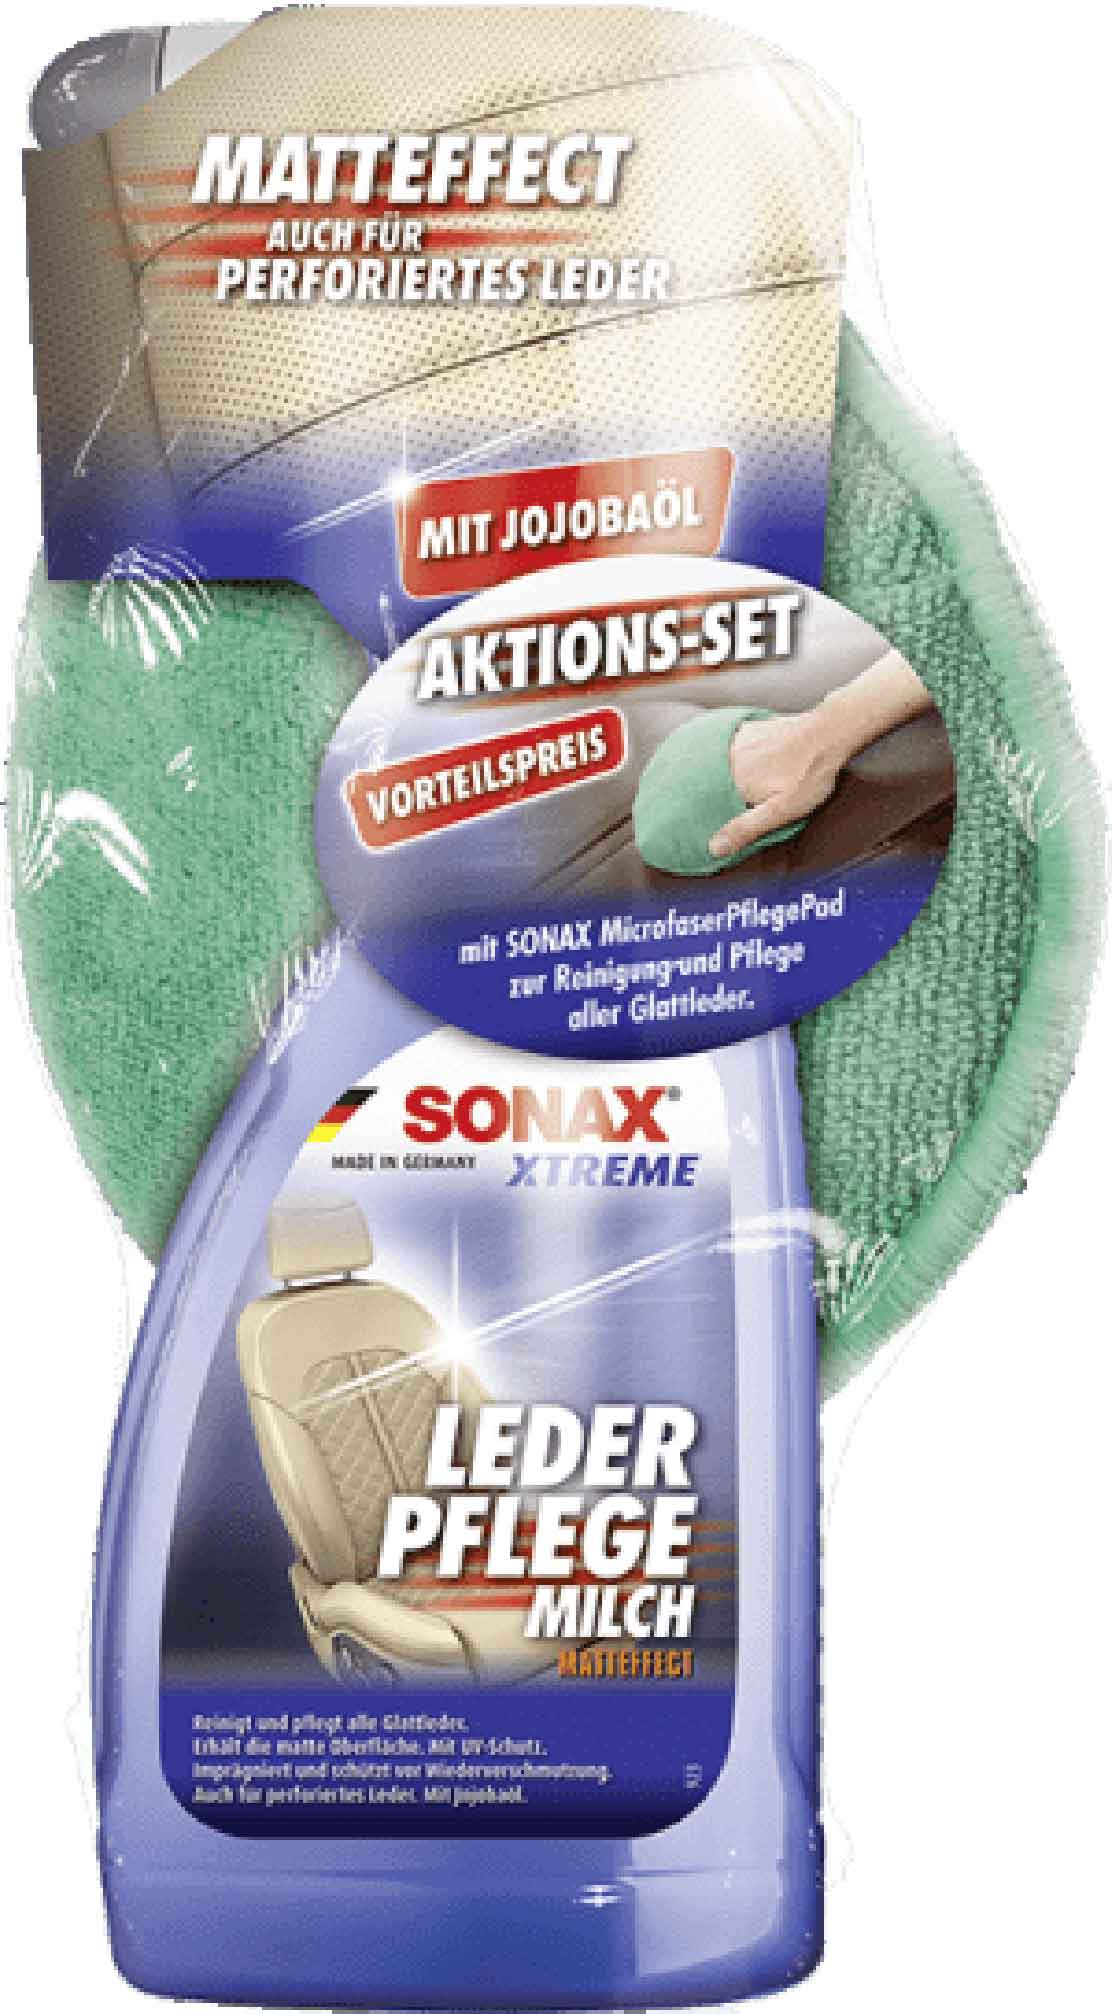 SONAX XtremeLederPflegemilch mit MicrofaserPad AktionsSet 02547410